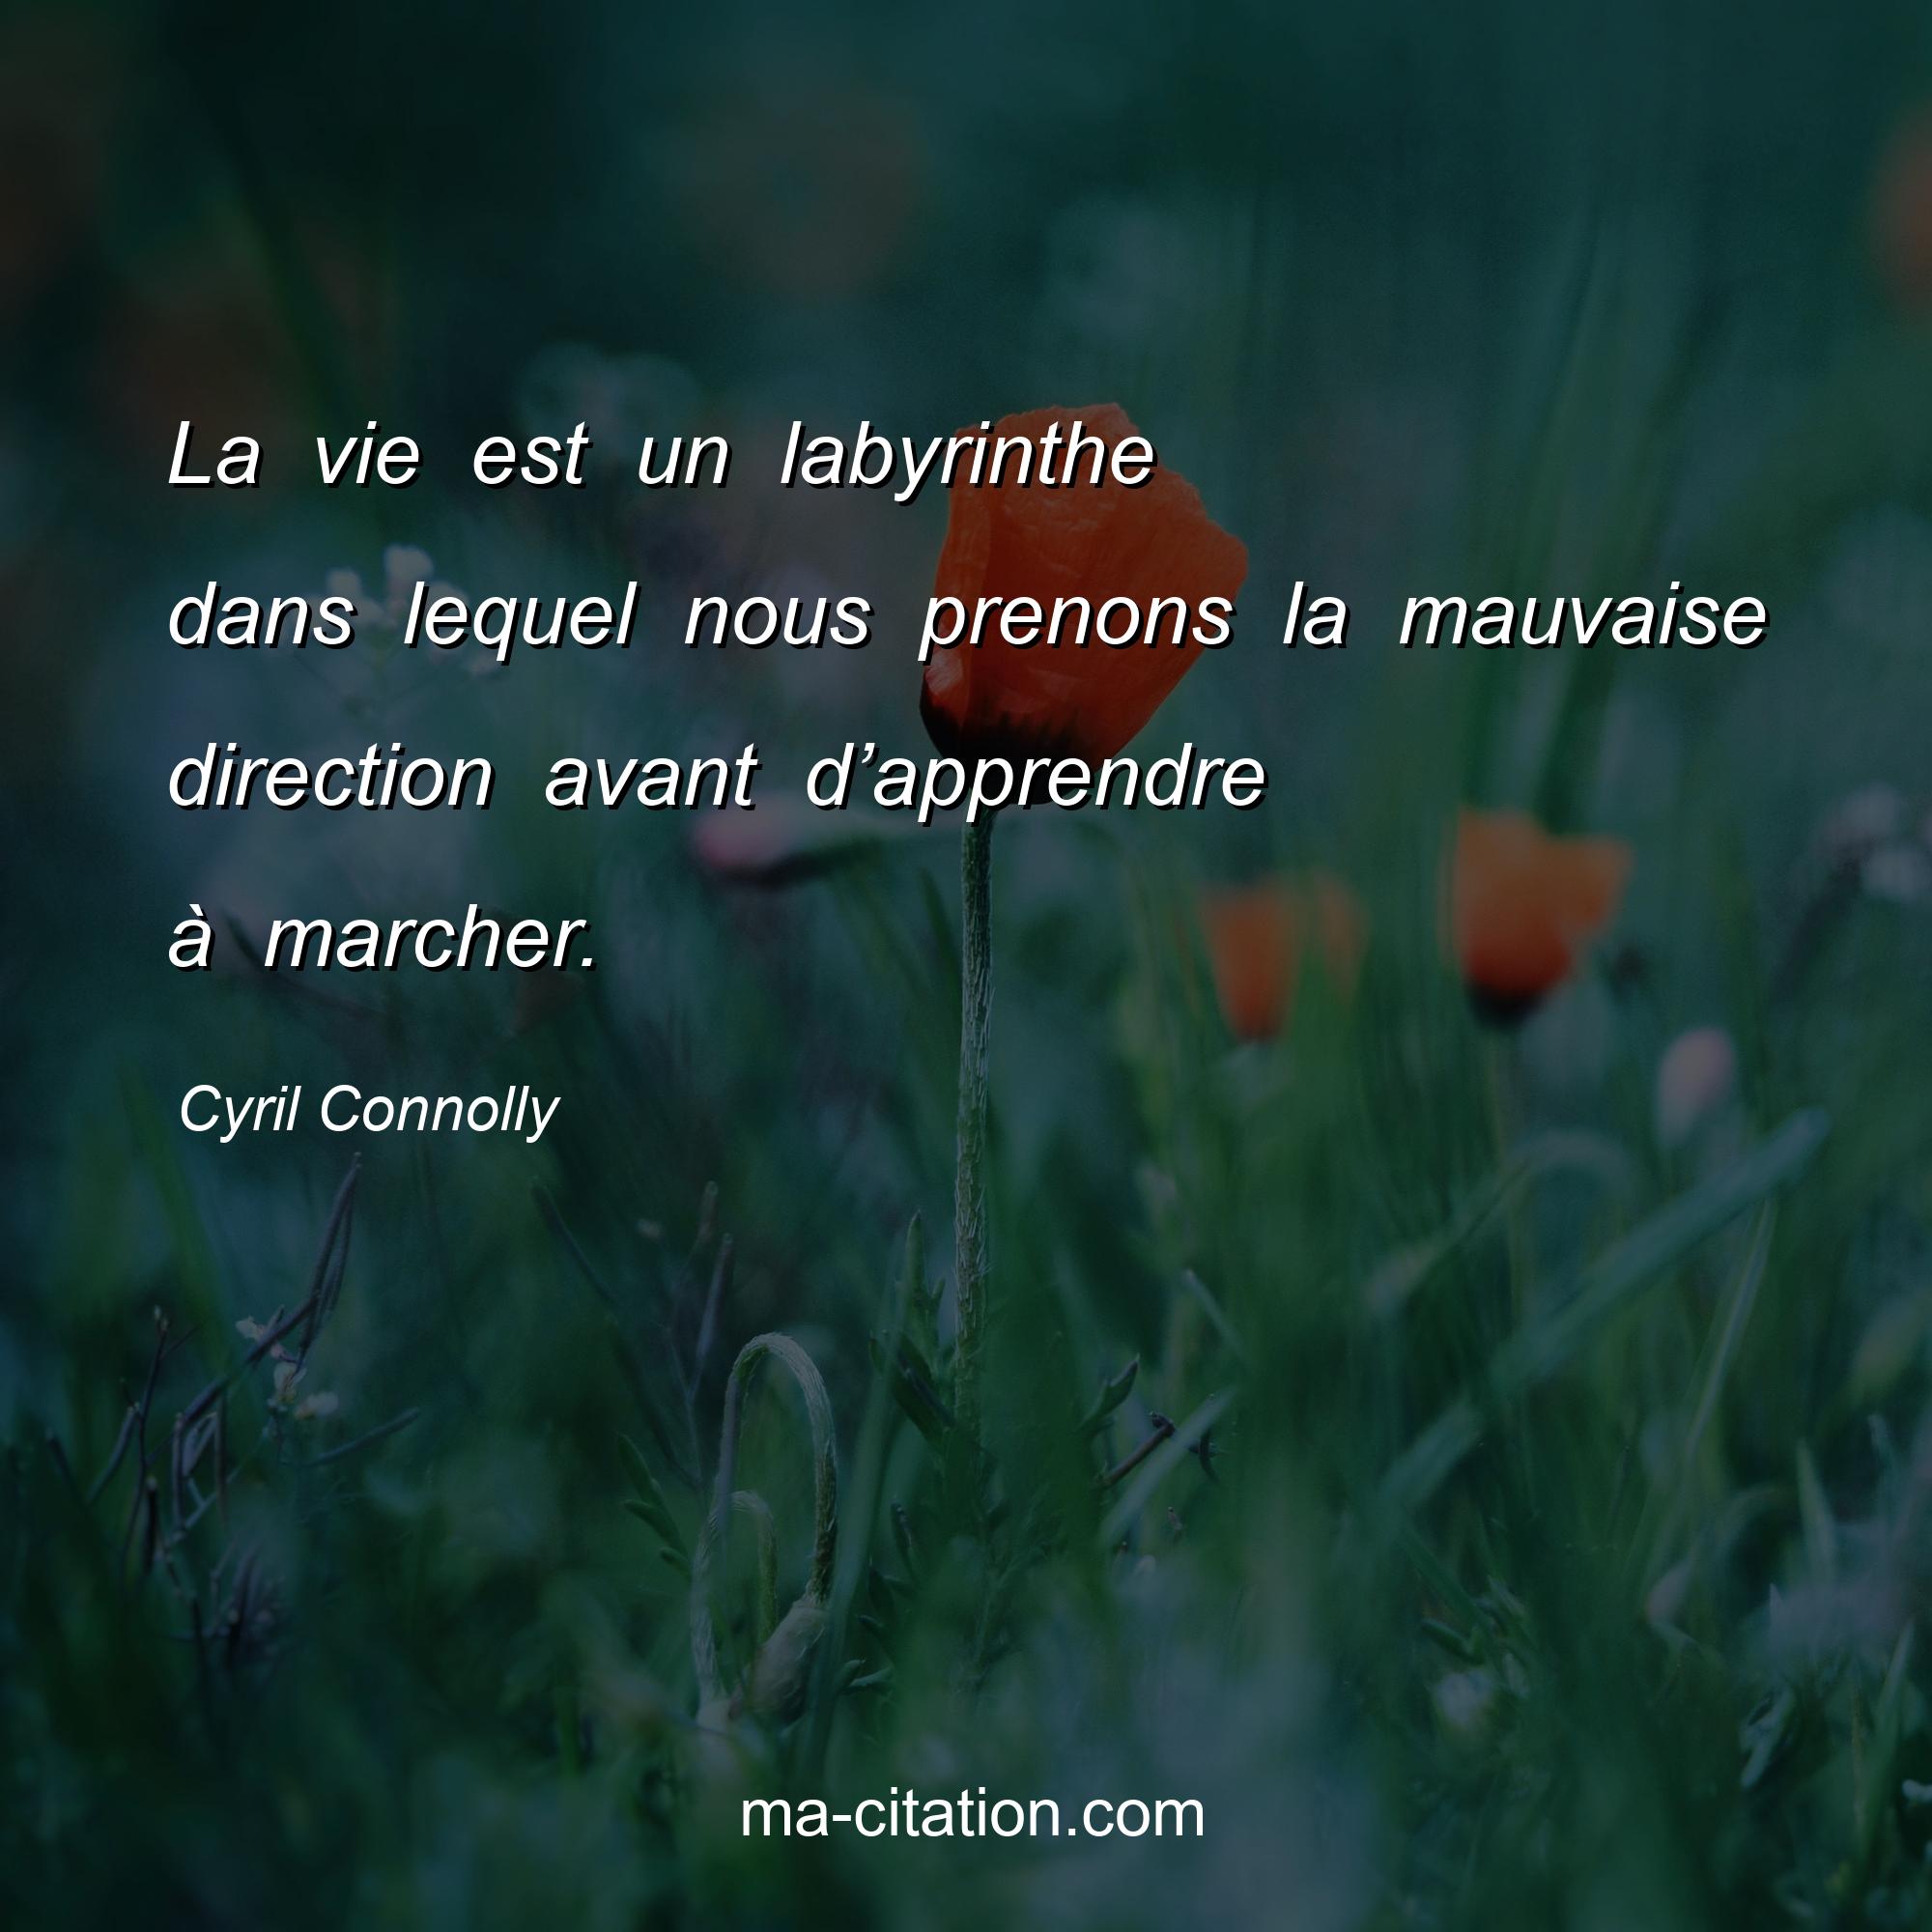 Cyril Connolly : La vie est un labyrinthe dans lequel nous prenons la mauvaise direction avant d’apprendre à marcher.